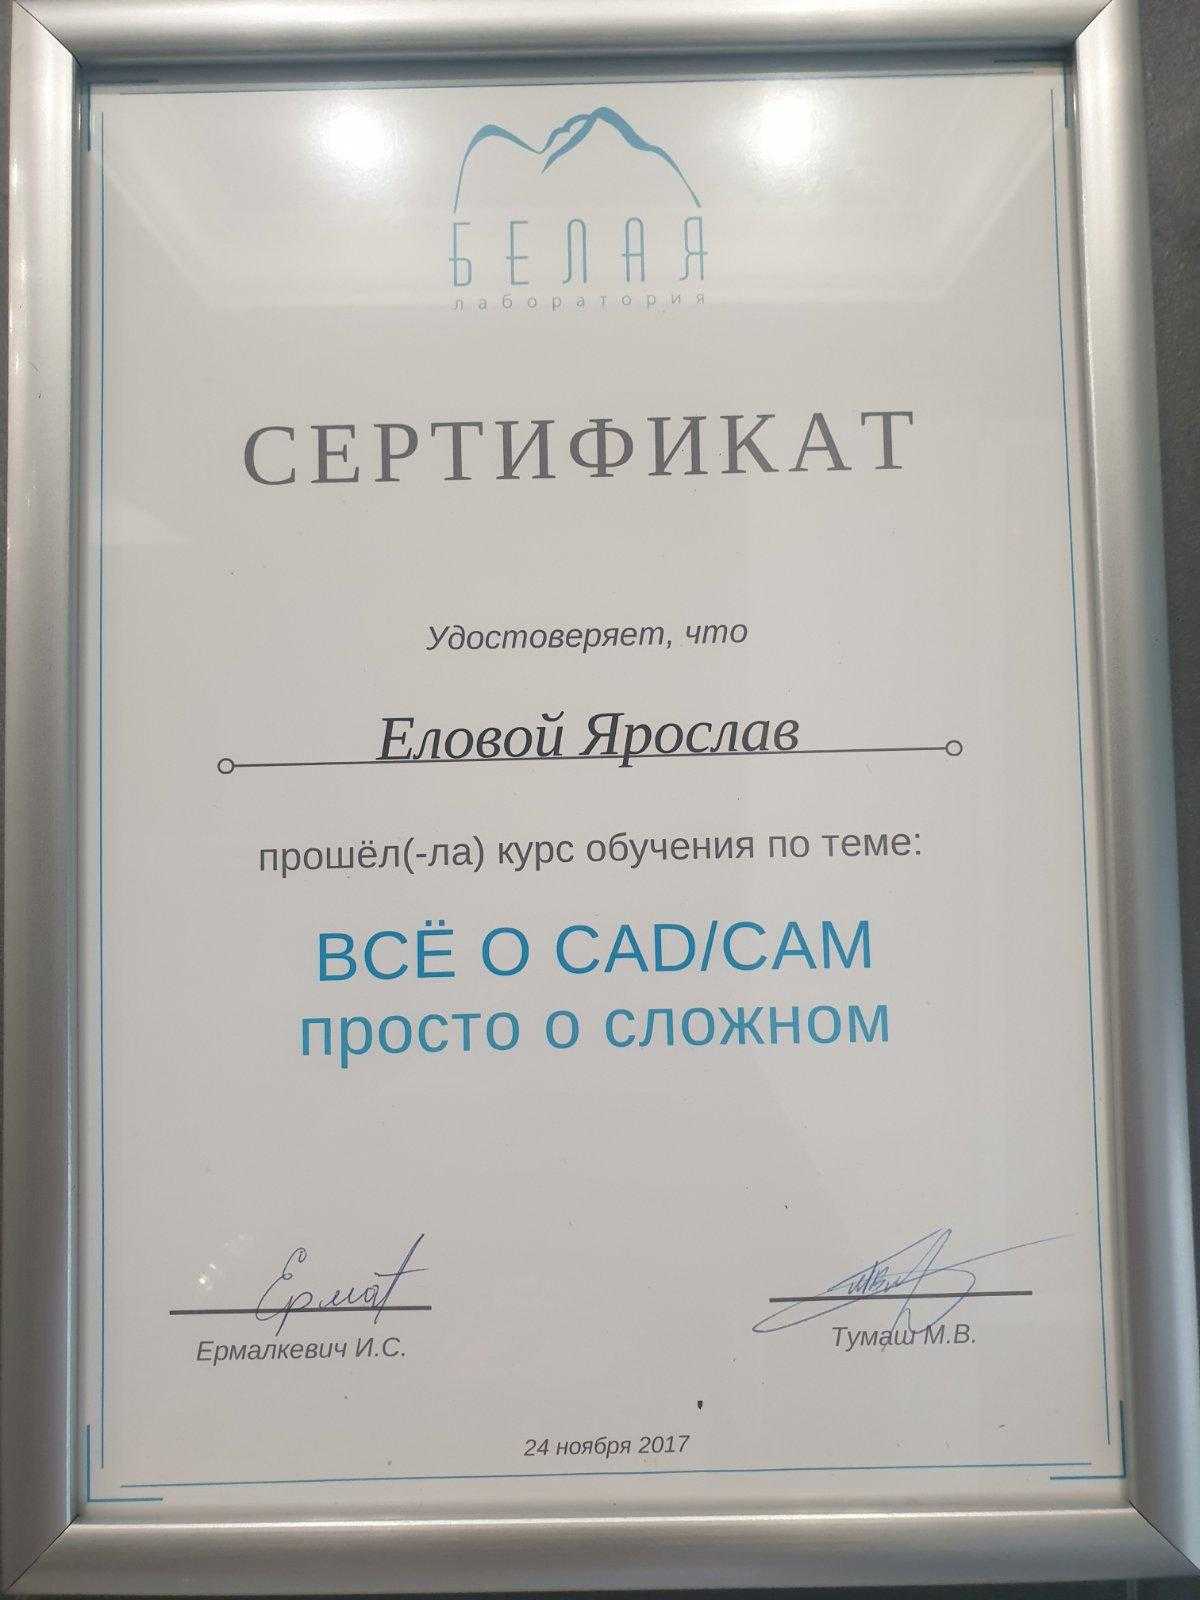 Сертификат выданный Еловому Ярославу о прохождении обучения по теме - Всё о CADCAM просто о сложном